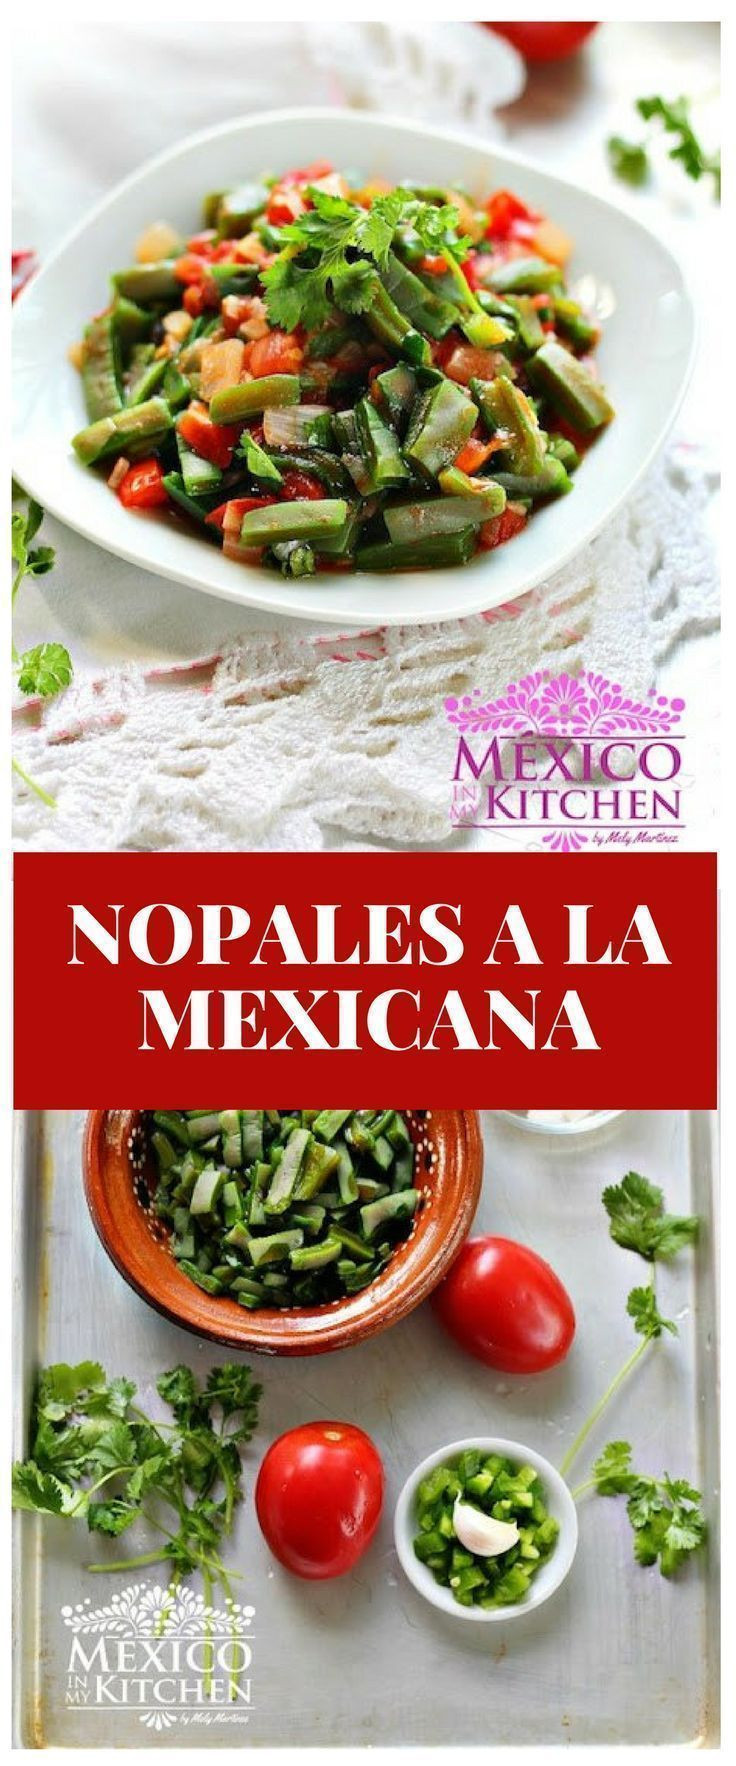 Nopales Recipes Mexican Keto
 Nopales a la mexicana Recipe